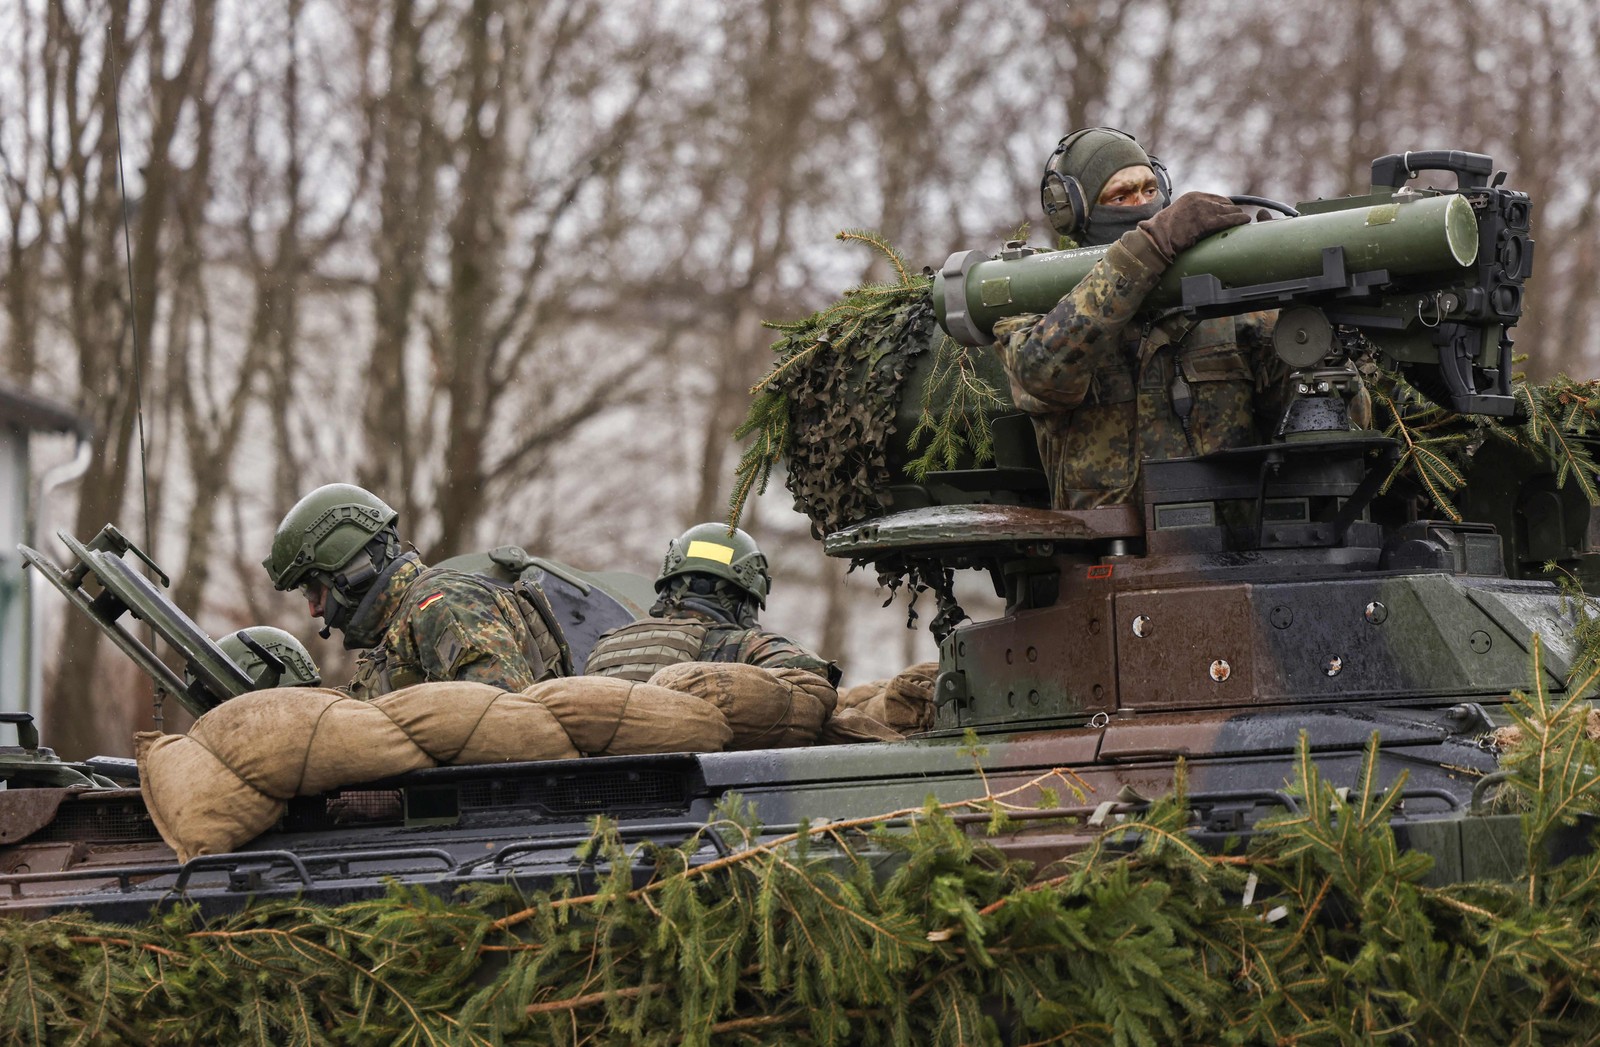 Soldado manuseia um sistema antitanque na torre de um veículo blindado durante exercício em base militar em Marienberg, leste da Alemanha, durante a visita da ministra da Defesa alemão. — Foto: Odd ANDERSEN / AFP